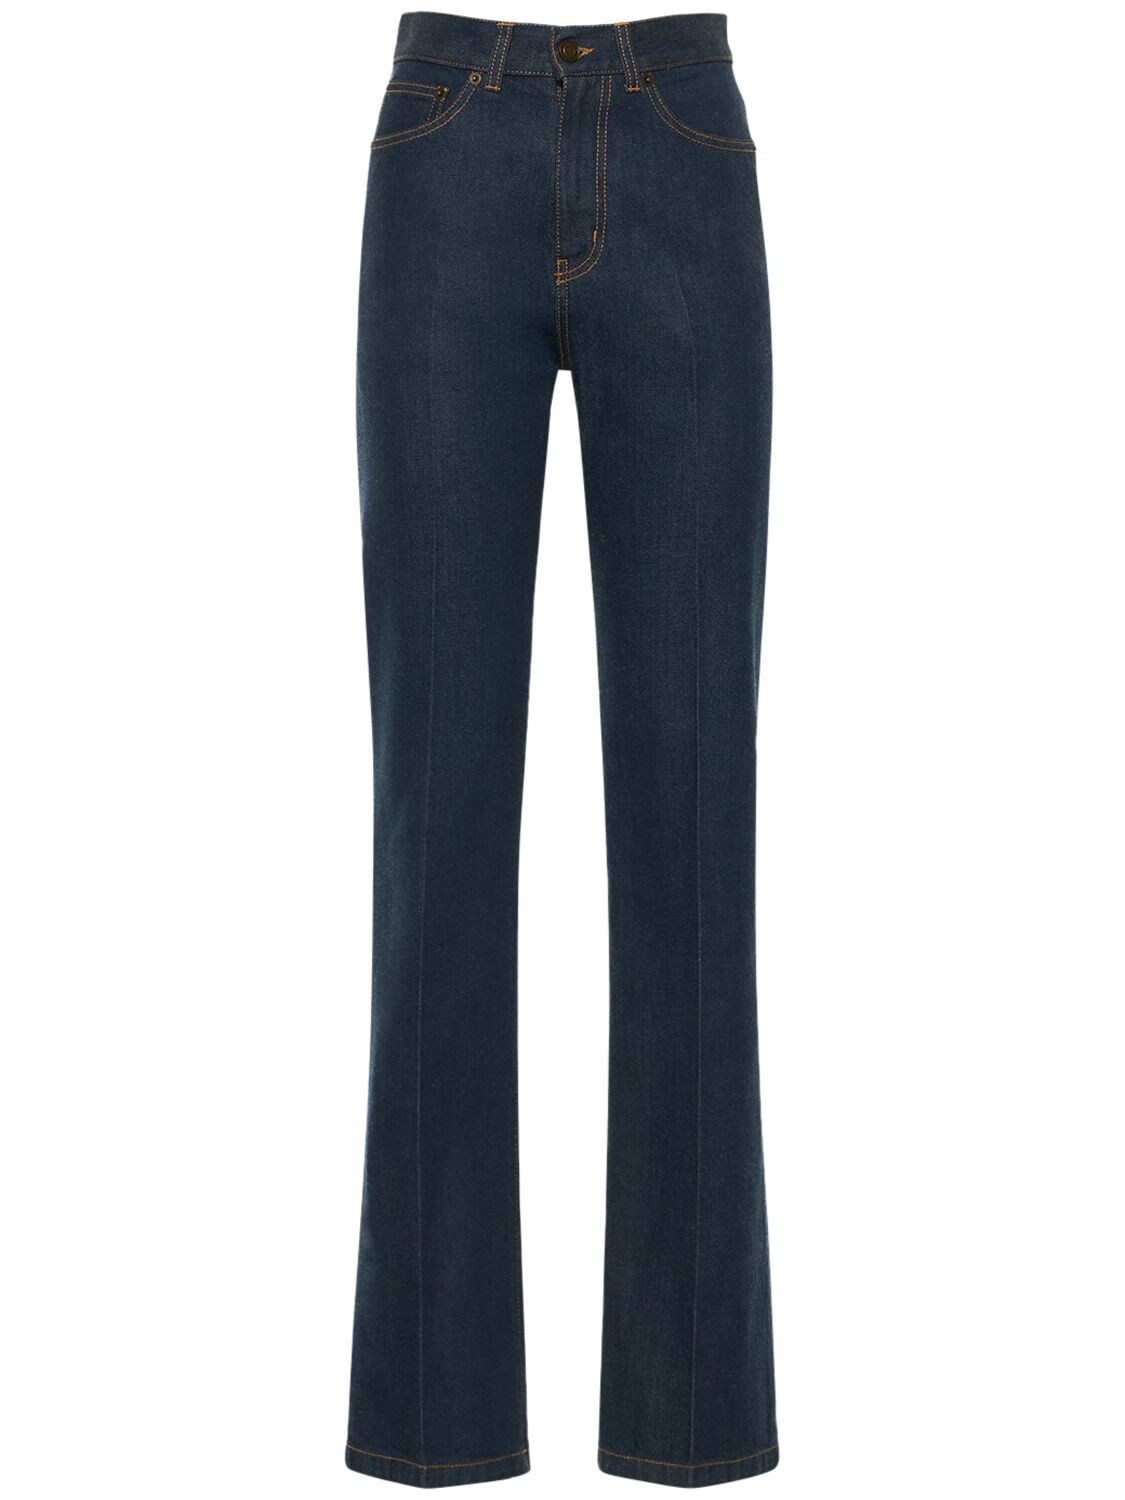 Femme Vêtements Jeans Jeans coupe droite Jean Slim Taille Haute Effet Vieilli Saint Laurent en coloris Bleu 